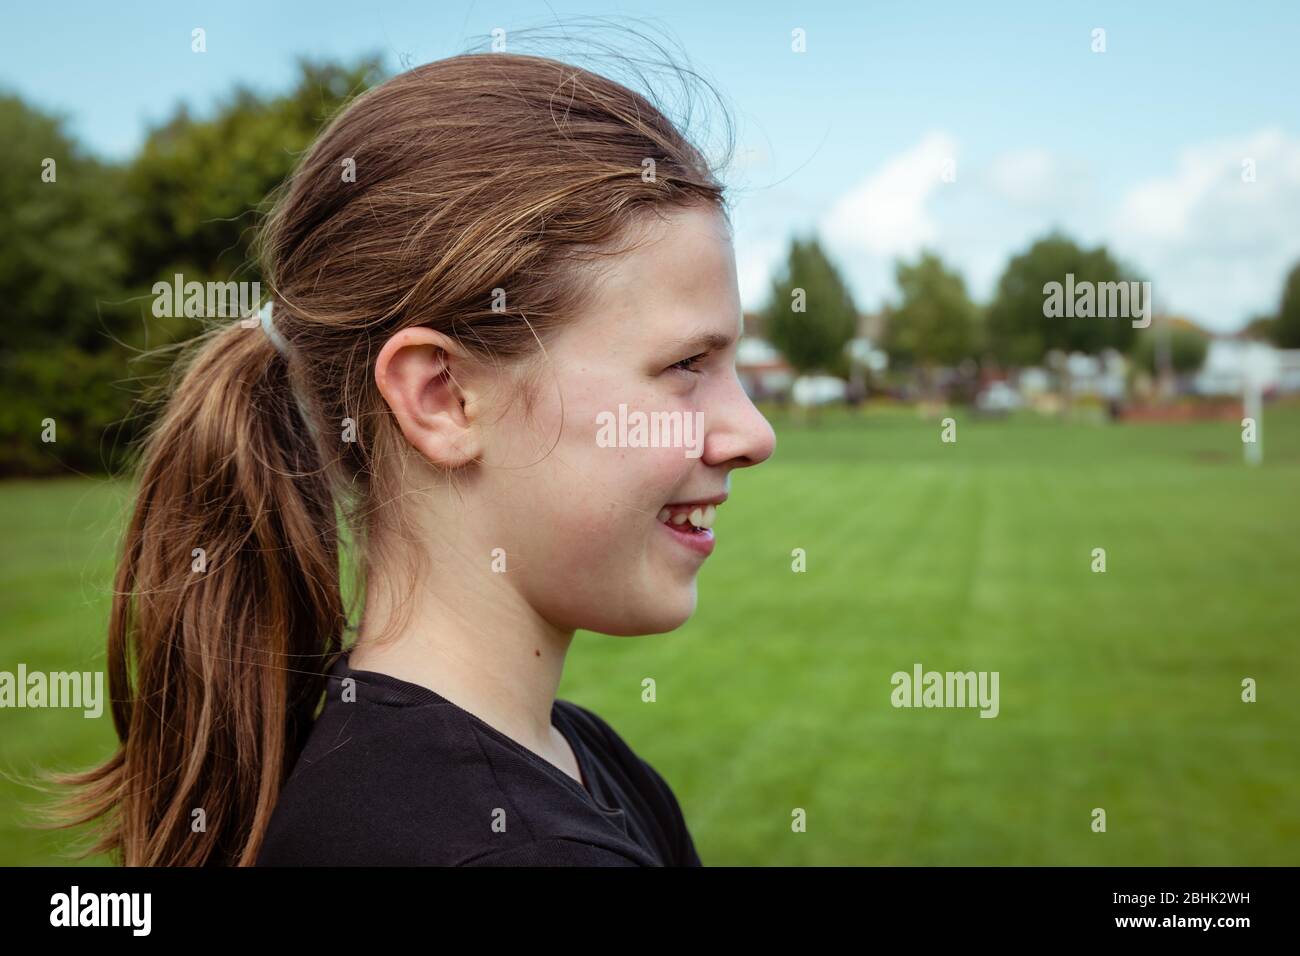 Ein sportliches Teenager-Mädchen mit Pferdeschwanz im Profil auf einem öffentlichen Park und Fußballplatz Stockfoto